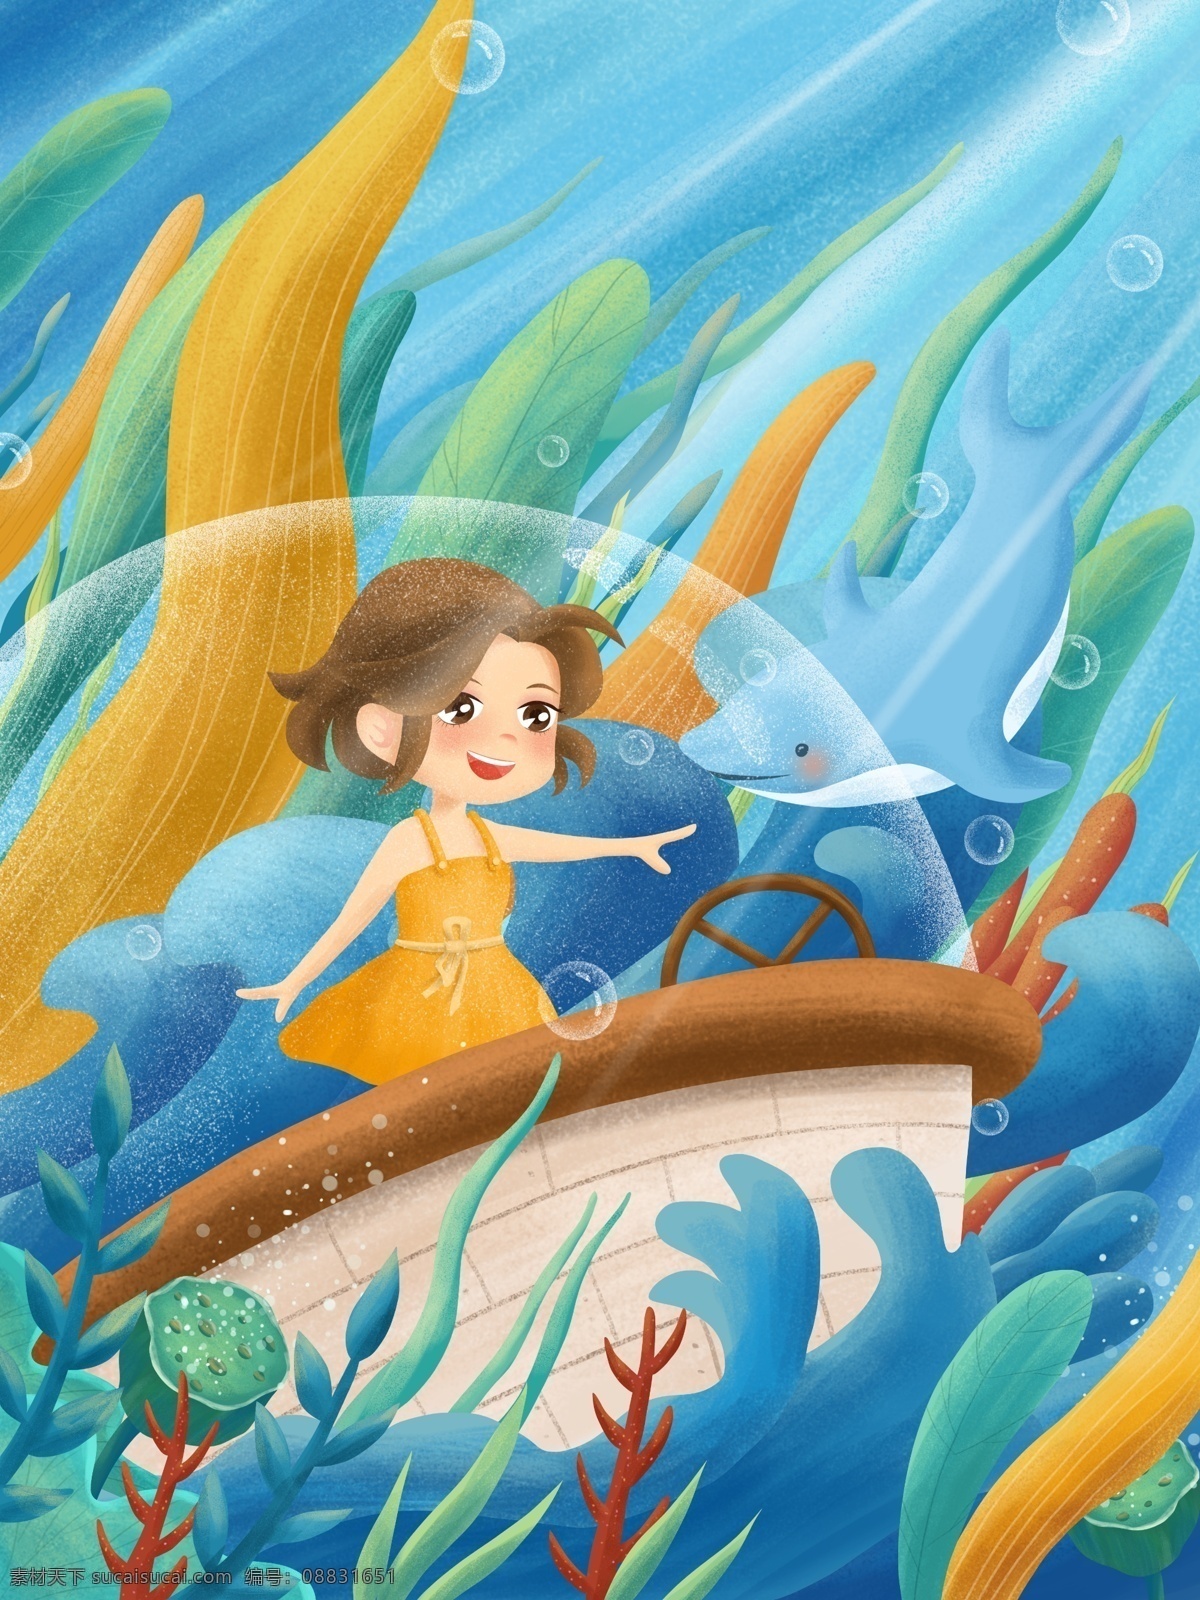 原创 手绘 插画 海洋 探险 女孩 海豚 船 海底 手绘插画 海 海水 潜艇